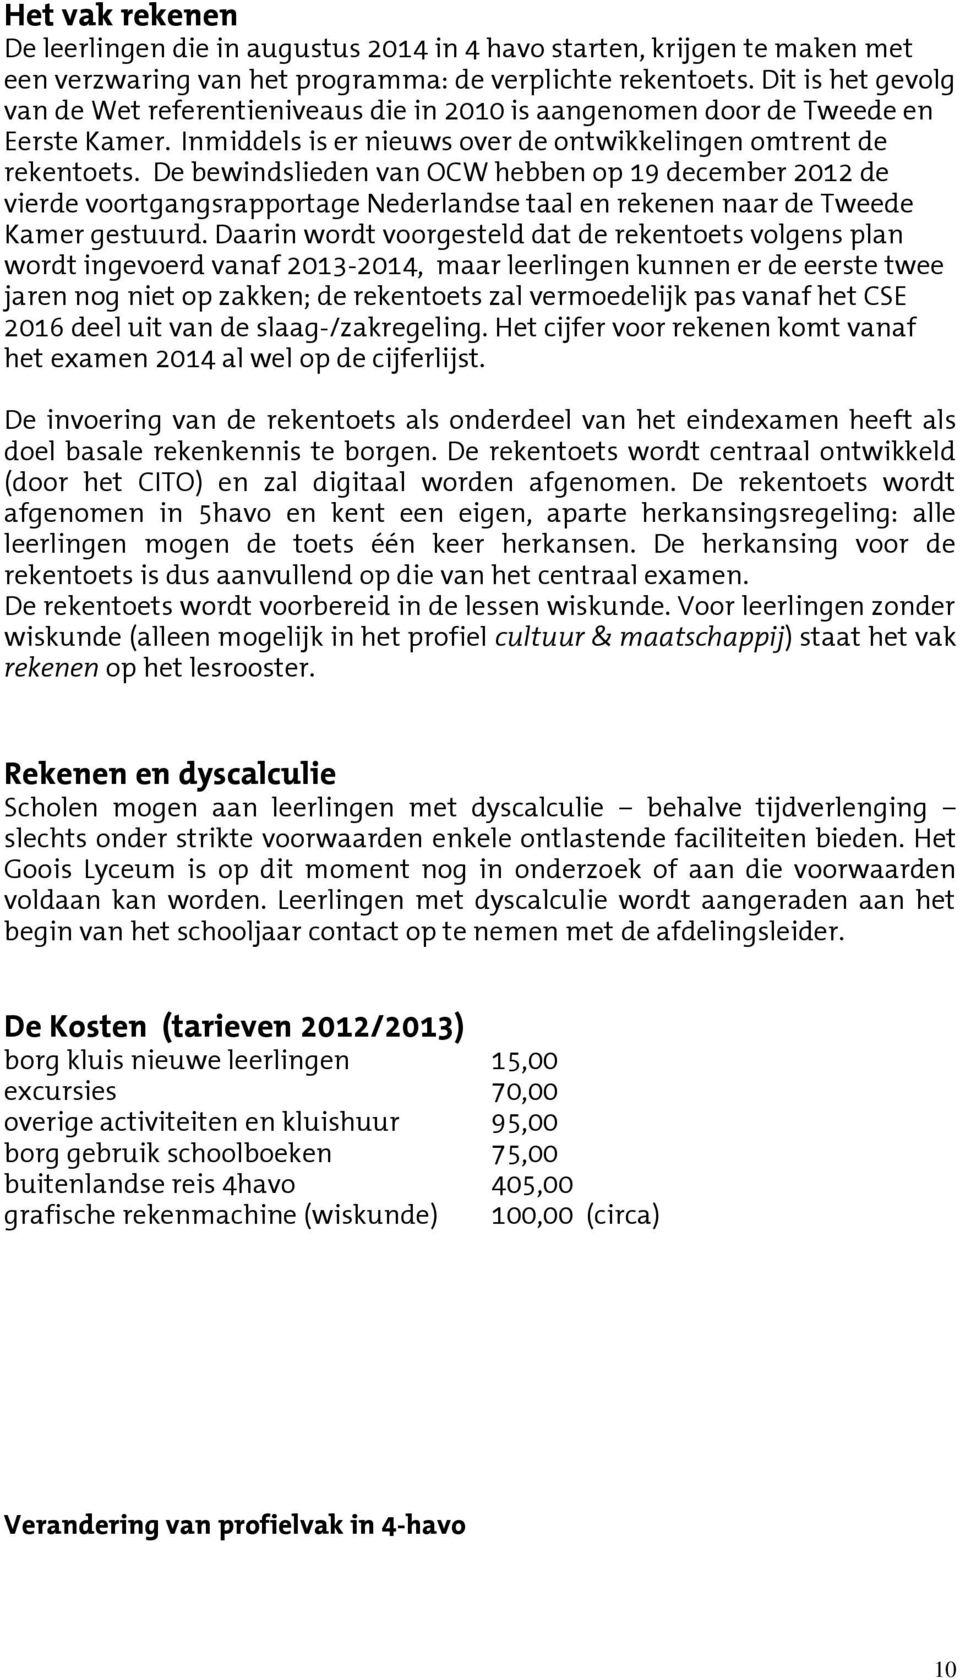 De bewindslieden van OCW hebben op 19 december 2012 de vierde voortgangsrapportage Nederlandse taal en rekenen naar de Tweede Kamer gestuurd.